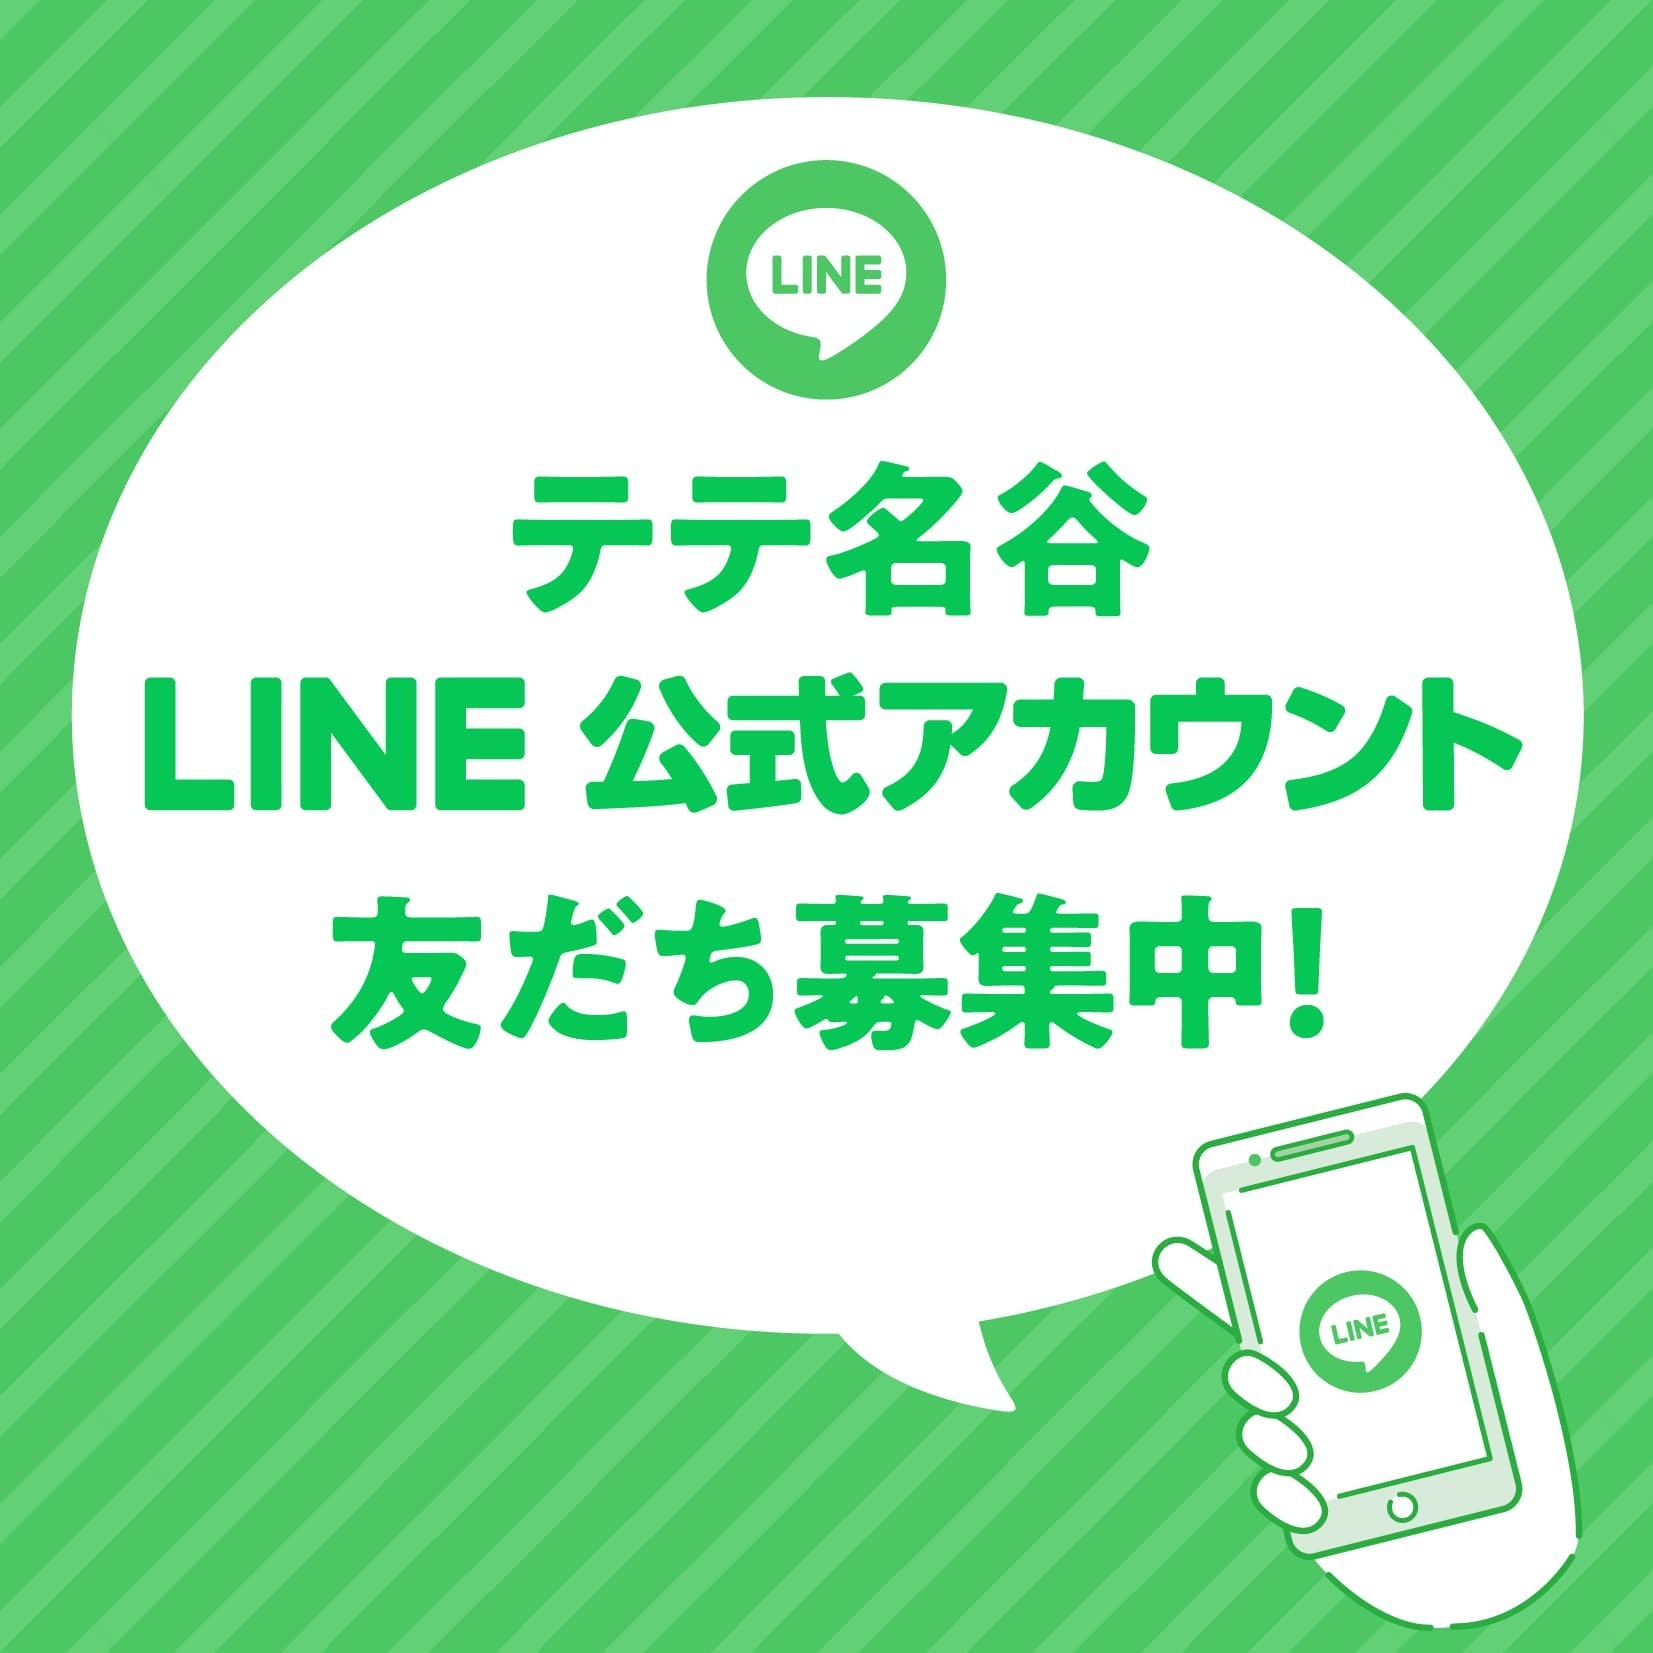 「テテ名谷」公式LINE